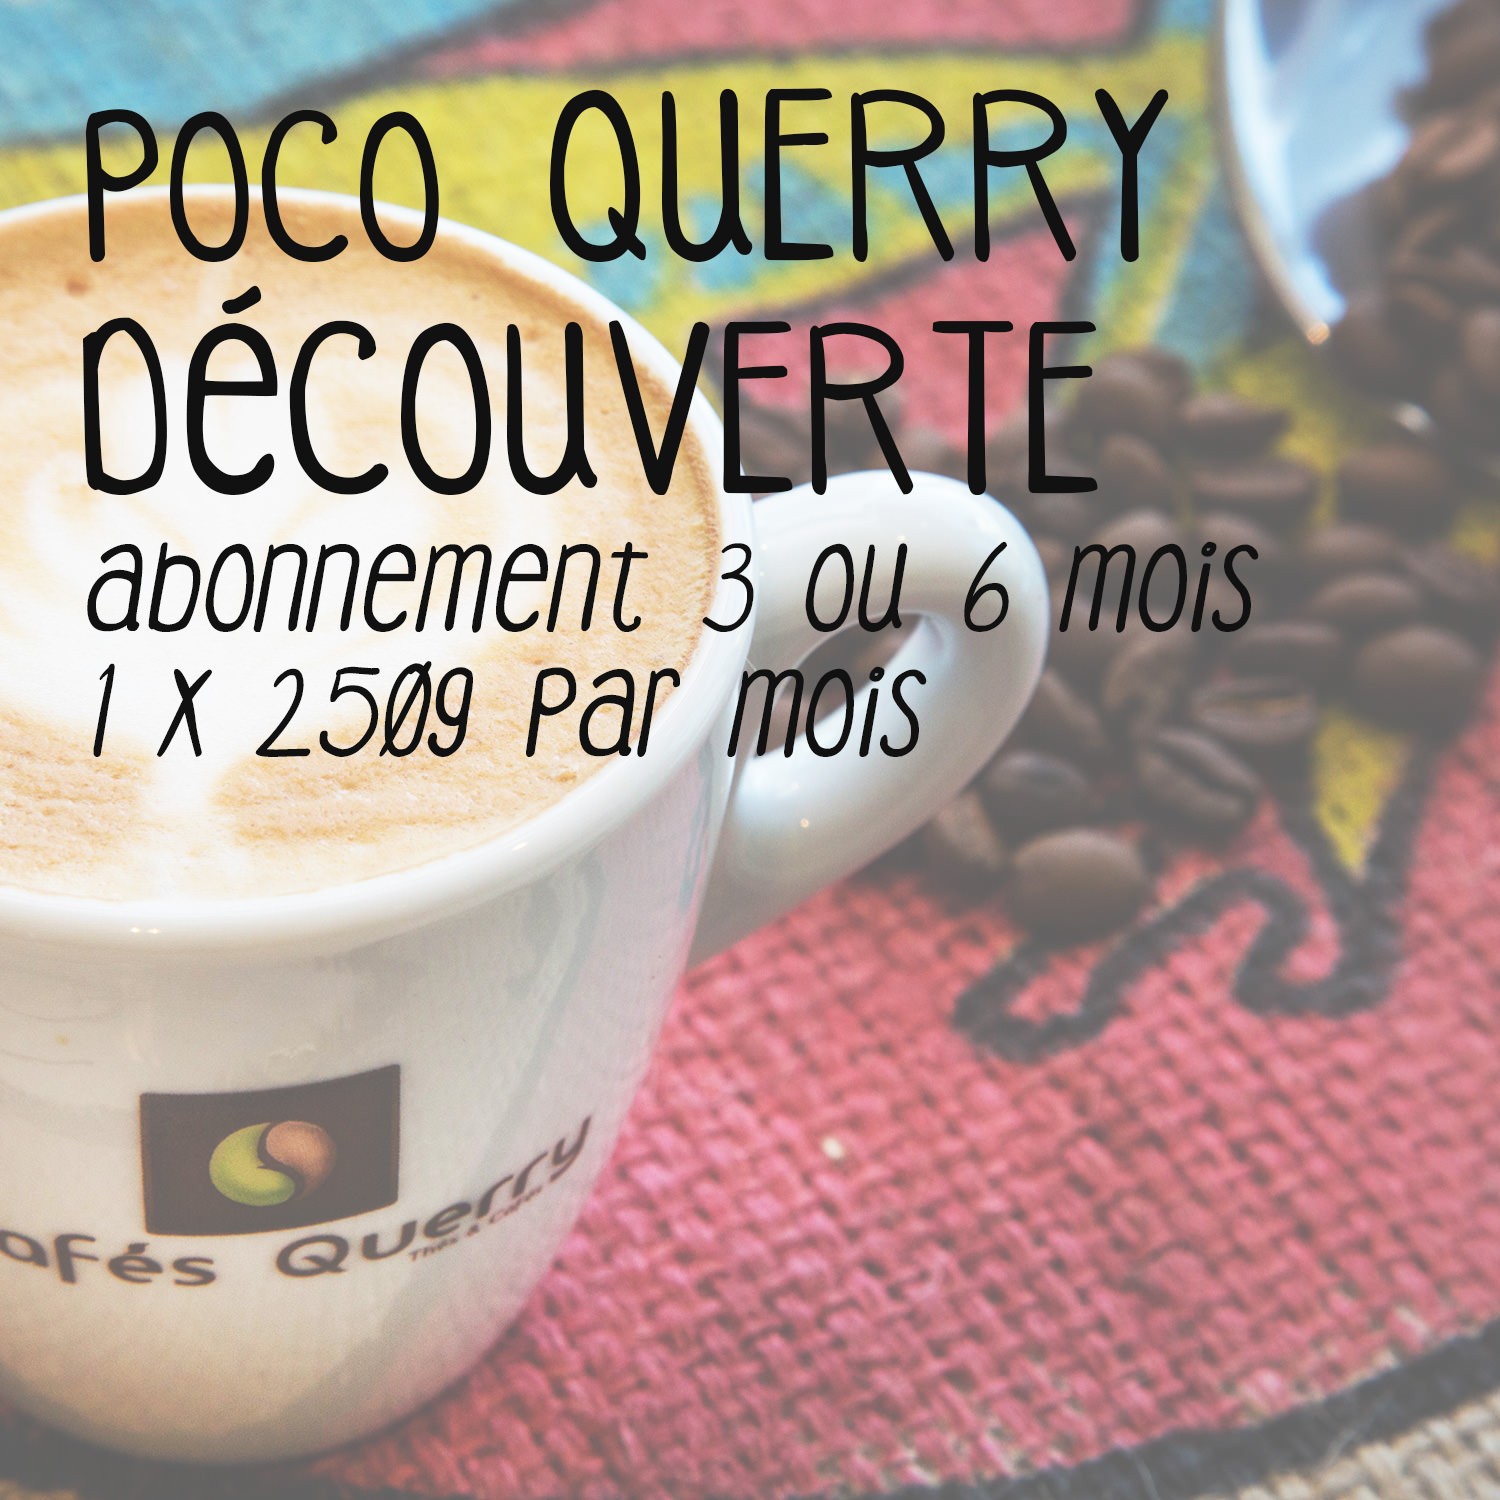 Abonnement café Poco Querry Découverte